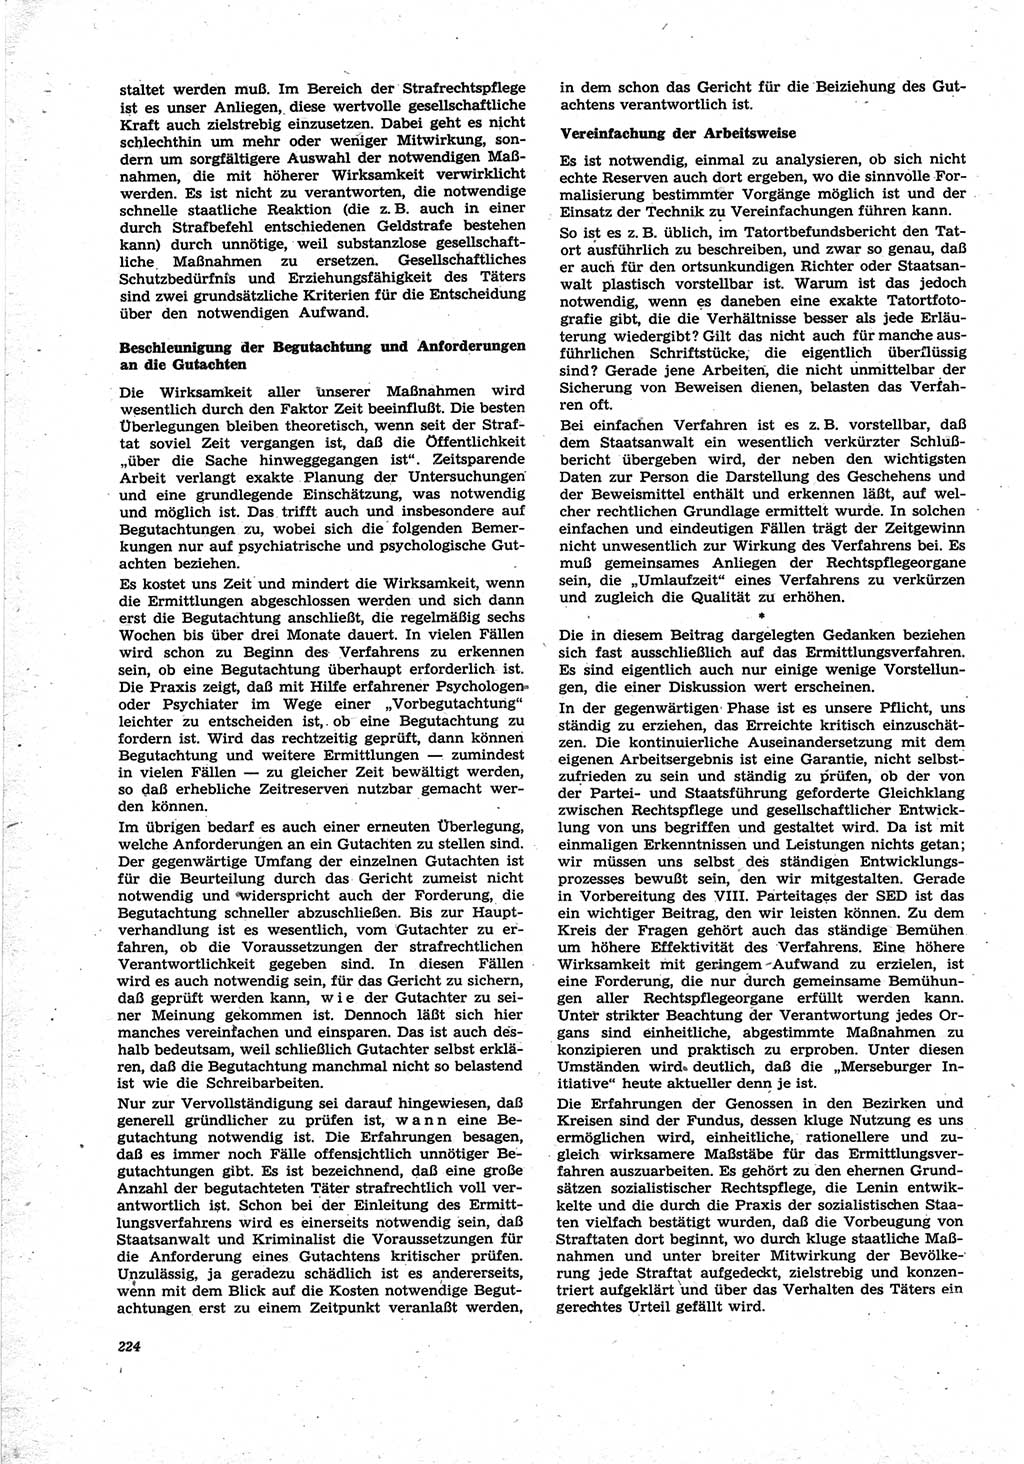 Neue Justiz (NJ), Zeitschrift für Recht und Rechtswissenschaft [Deutsche Demokratische Republik (DDR)], 25. Jahrgang 1971, Seite 224 (NJ DDR 1971, S. 224)